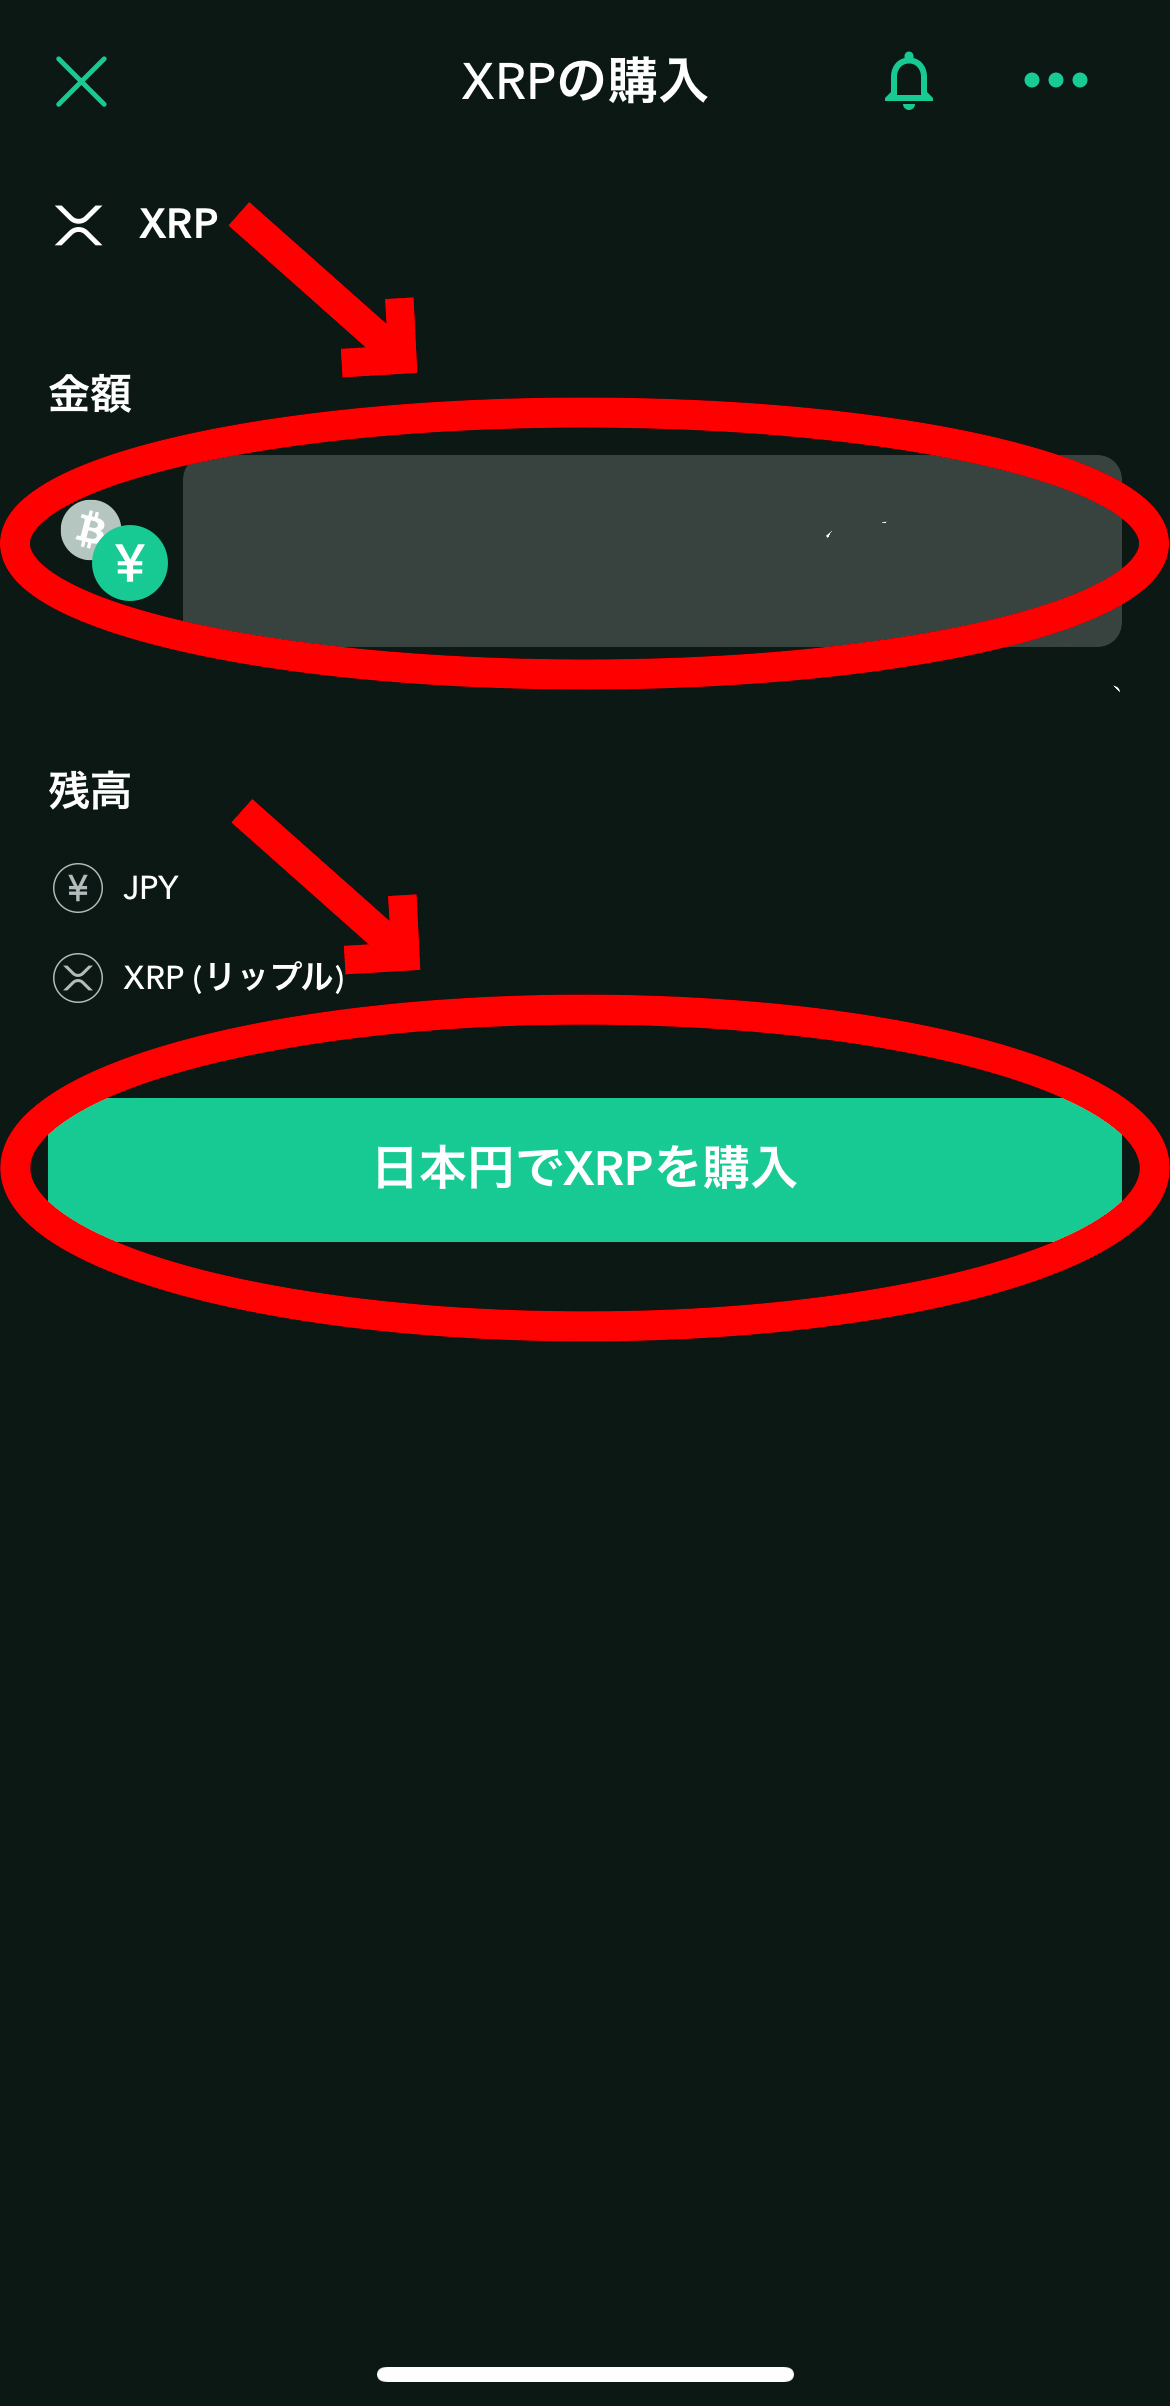 OKXでセービング方法【リップル】【Saving】【スマホで簡単】【初心者向け】日本円でXRPを購入を選択します